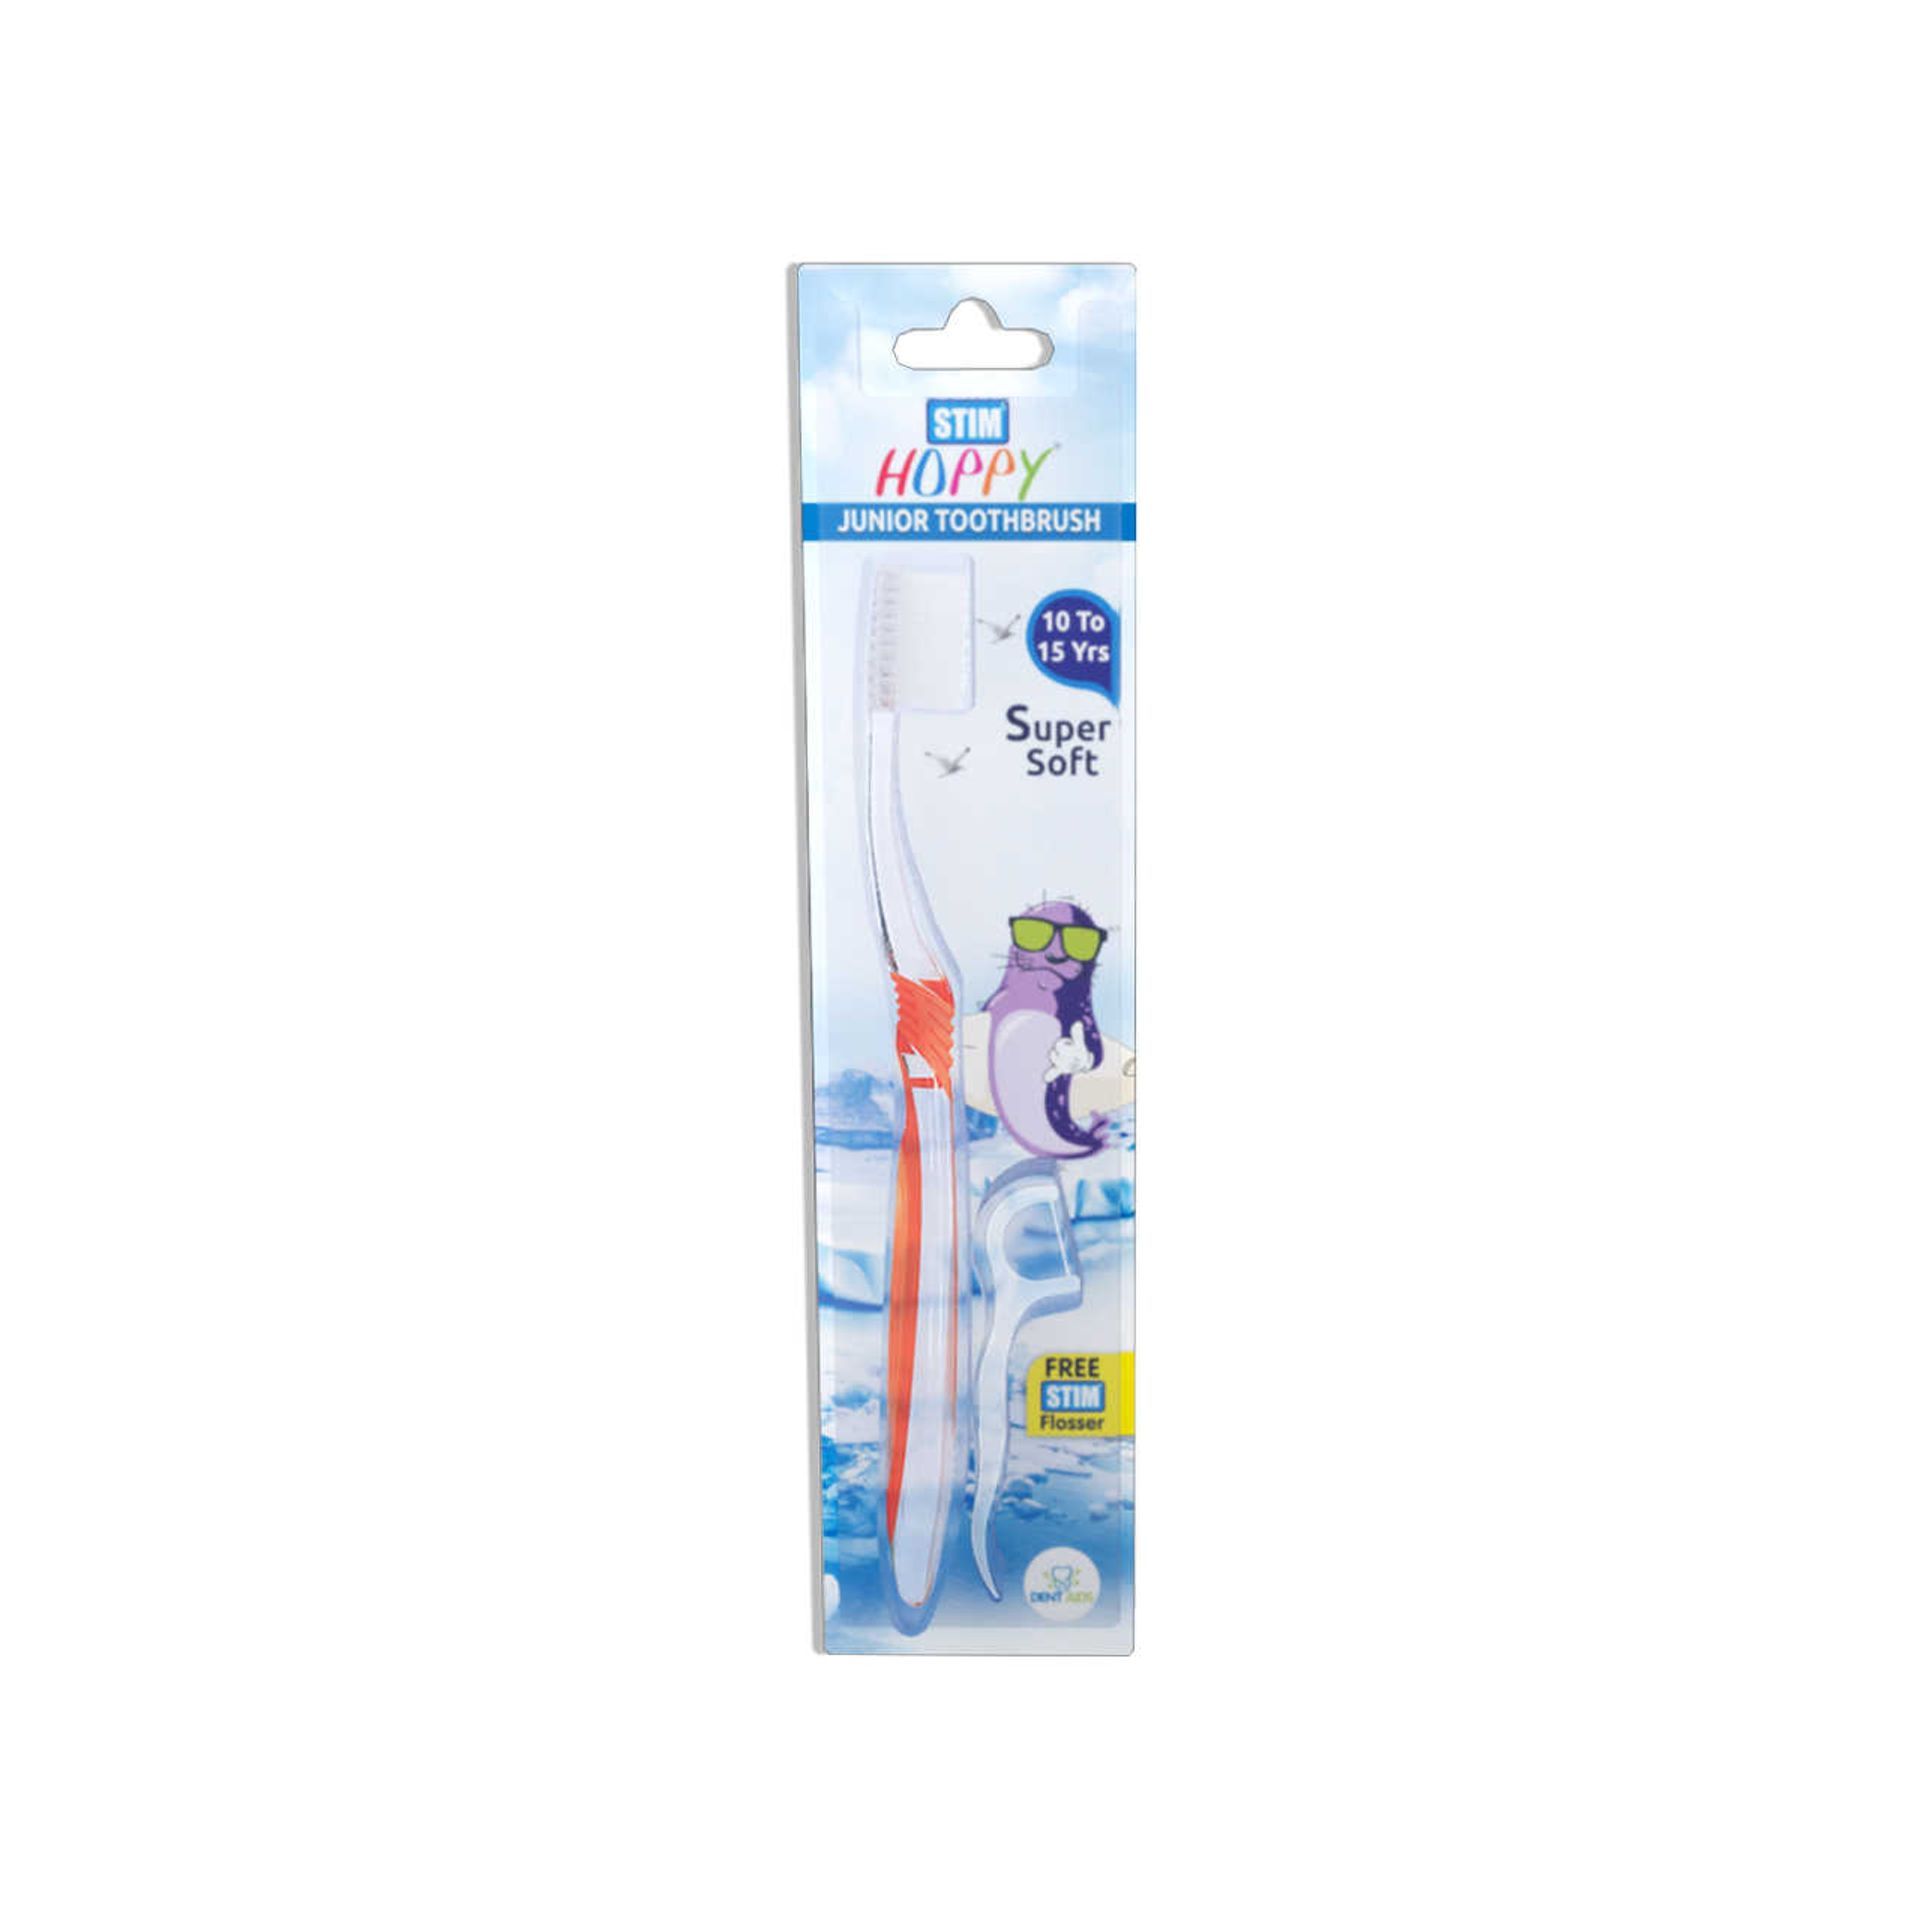 Hoppy Junior Toothbrush - 10 Years to 15 Years